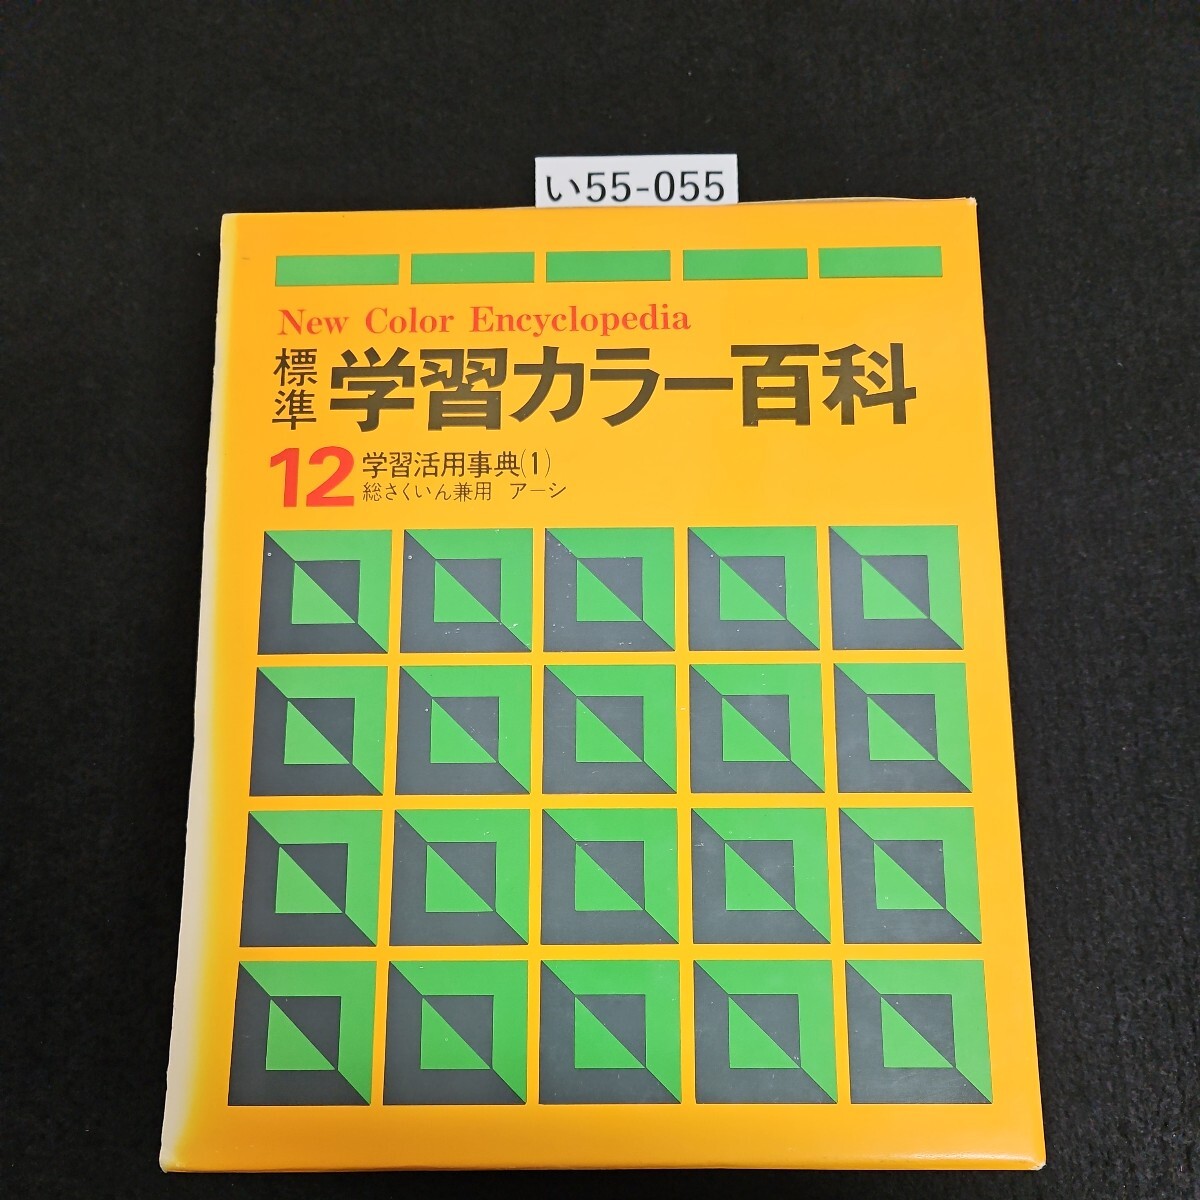 い55-055 New Color Encyclopedia 標準 学習カラー百科 12 学習活用事典(1)総さくいん兼用 アーシ_画像1